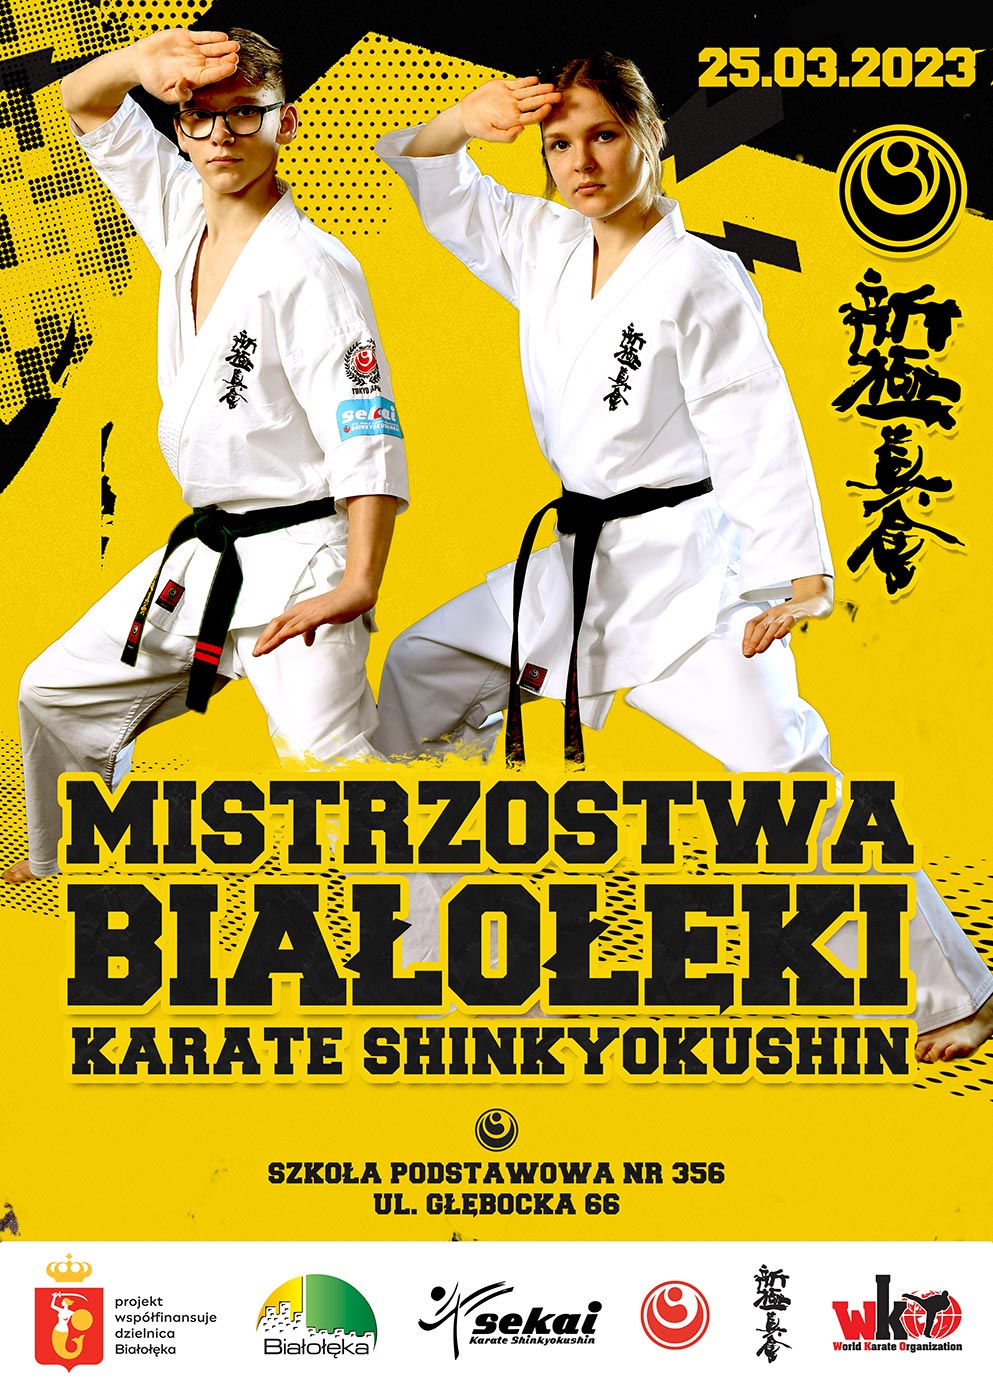 Mistrzostwa Białołęki Karate Shinkyokushin 2023